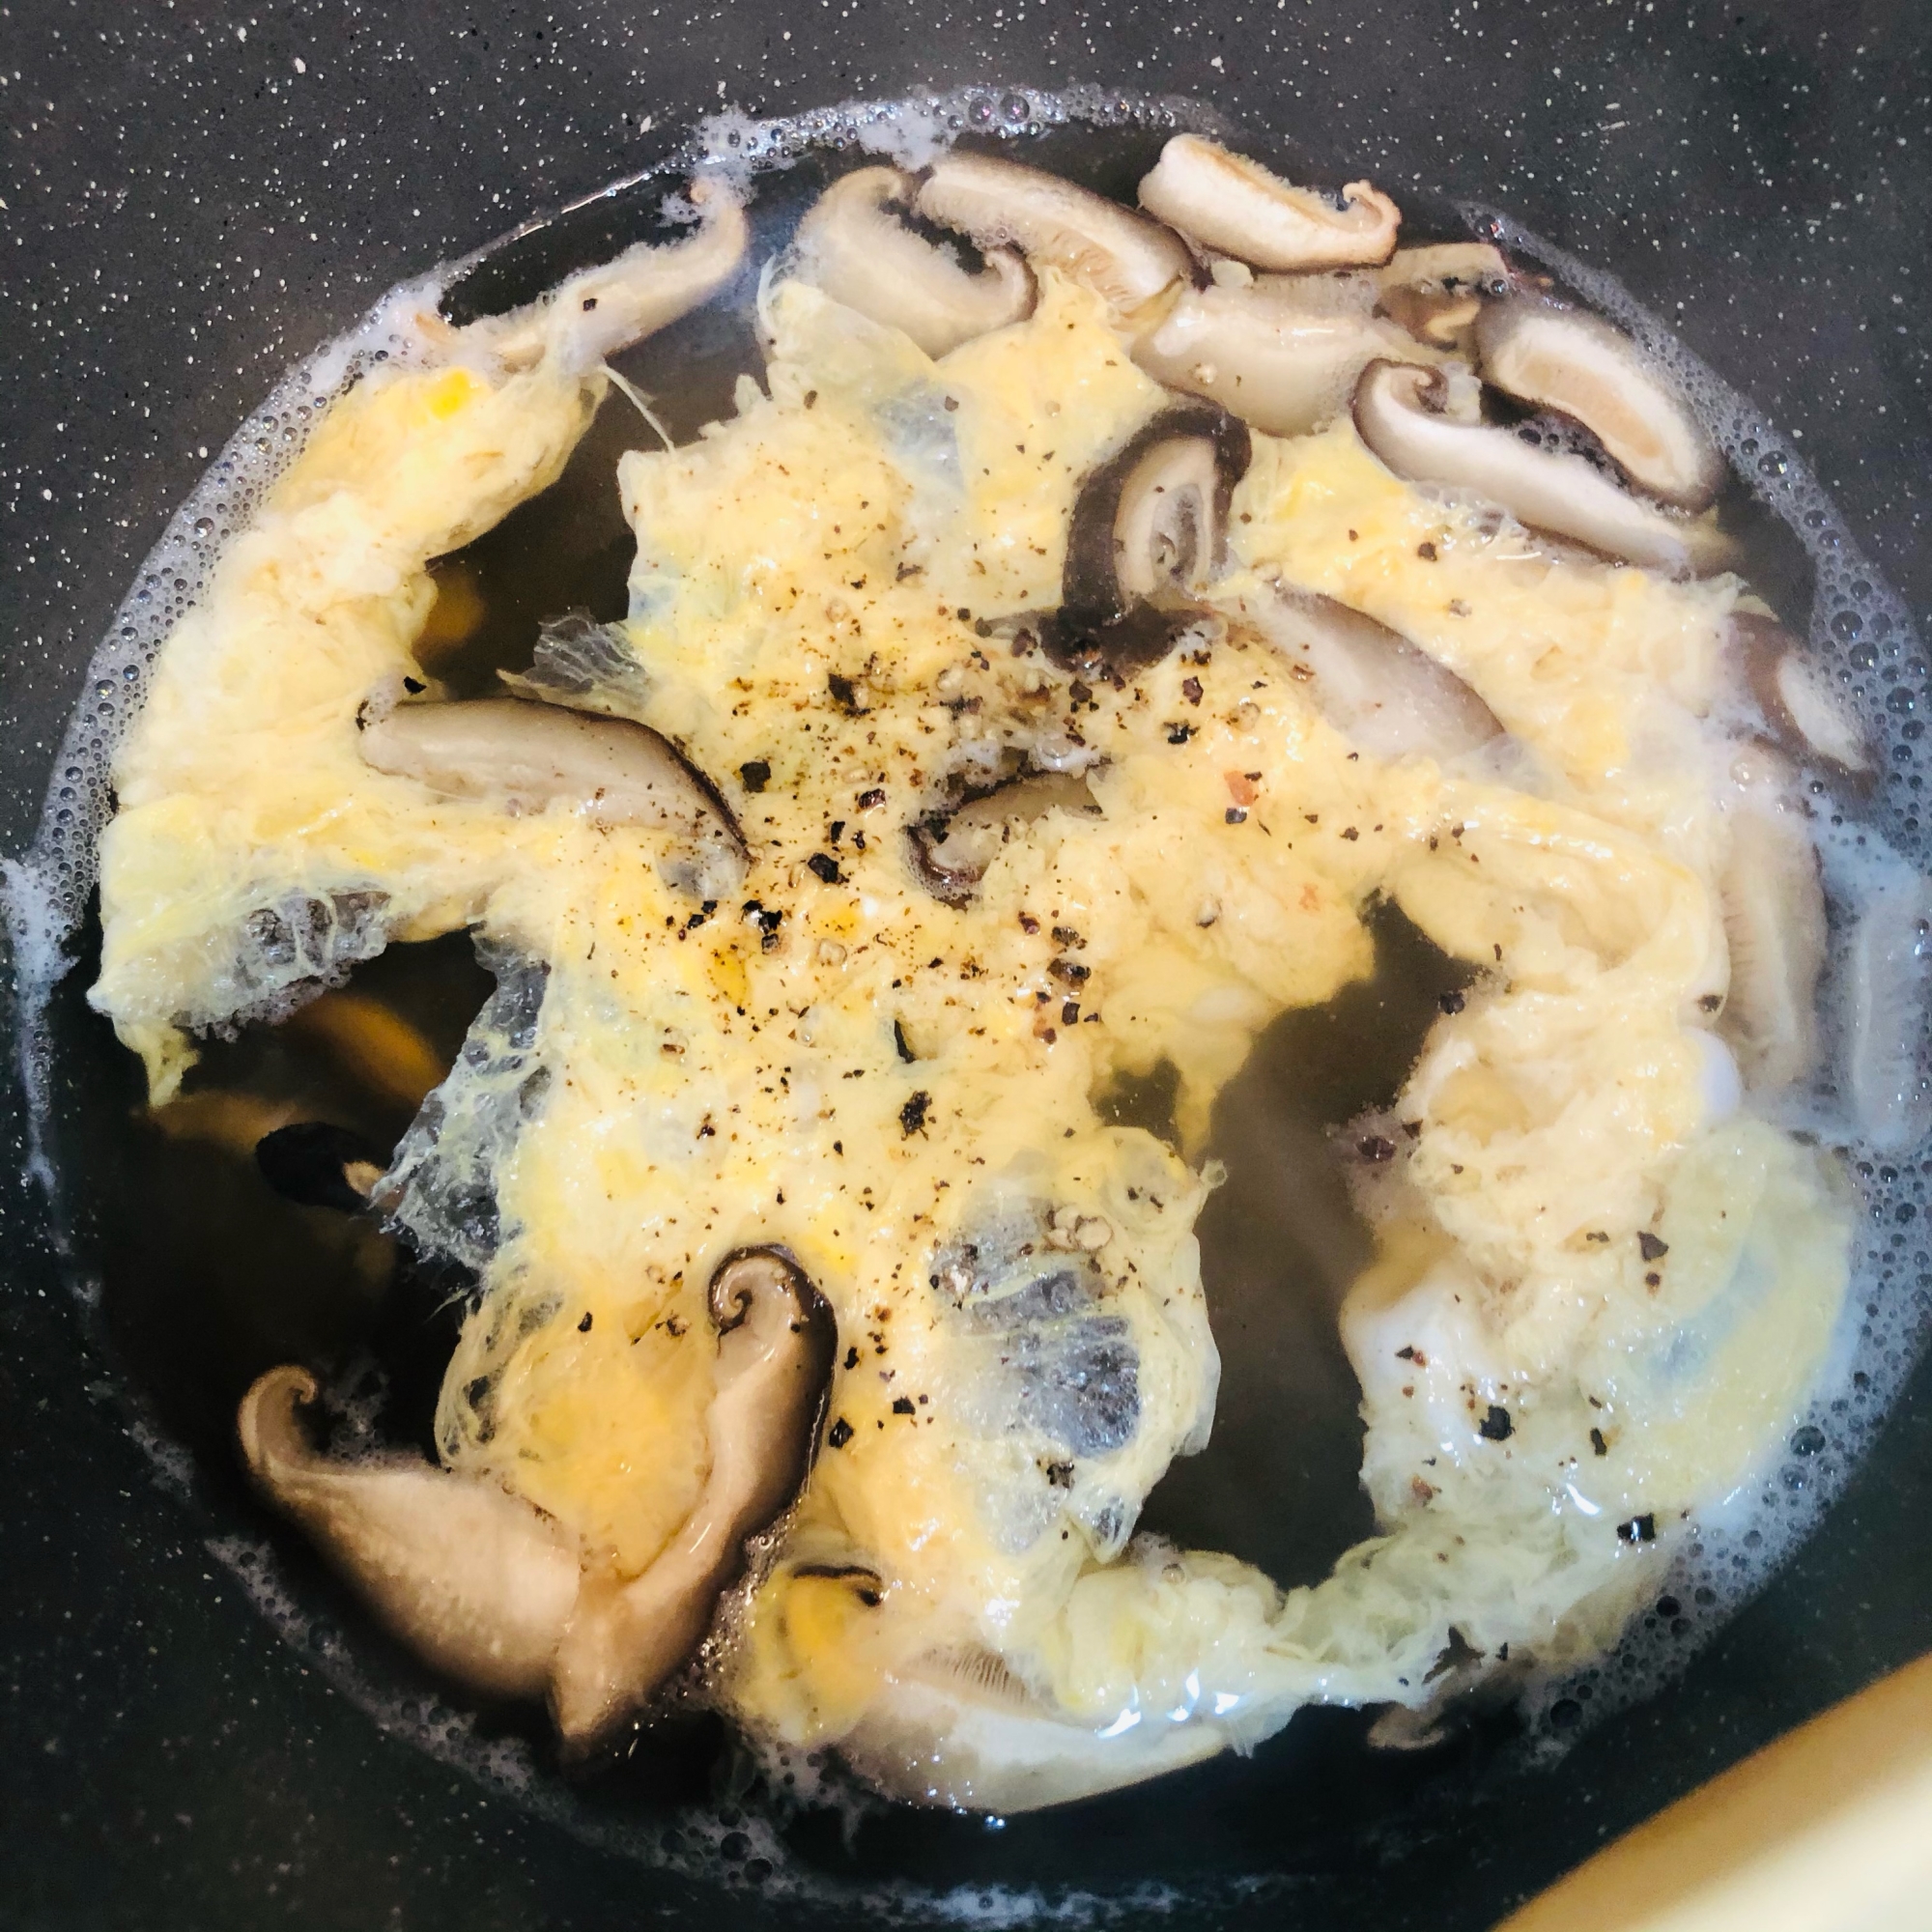 椎茸と卵のスープ